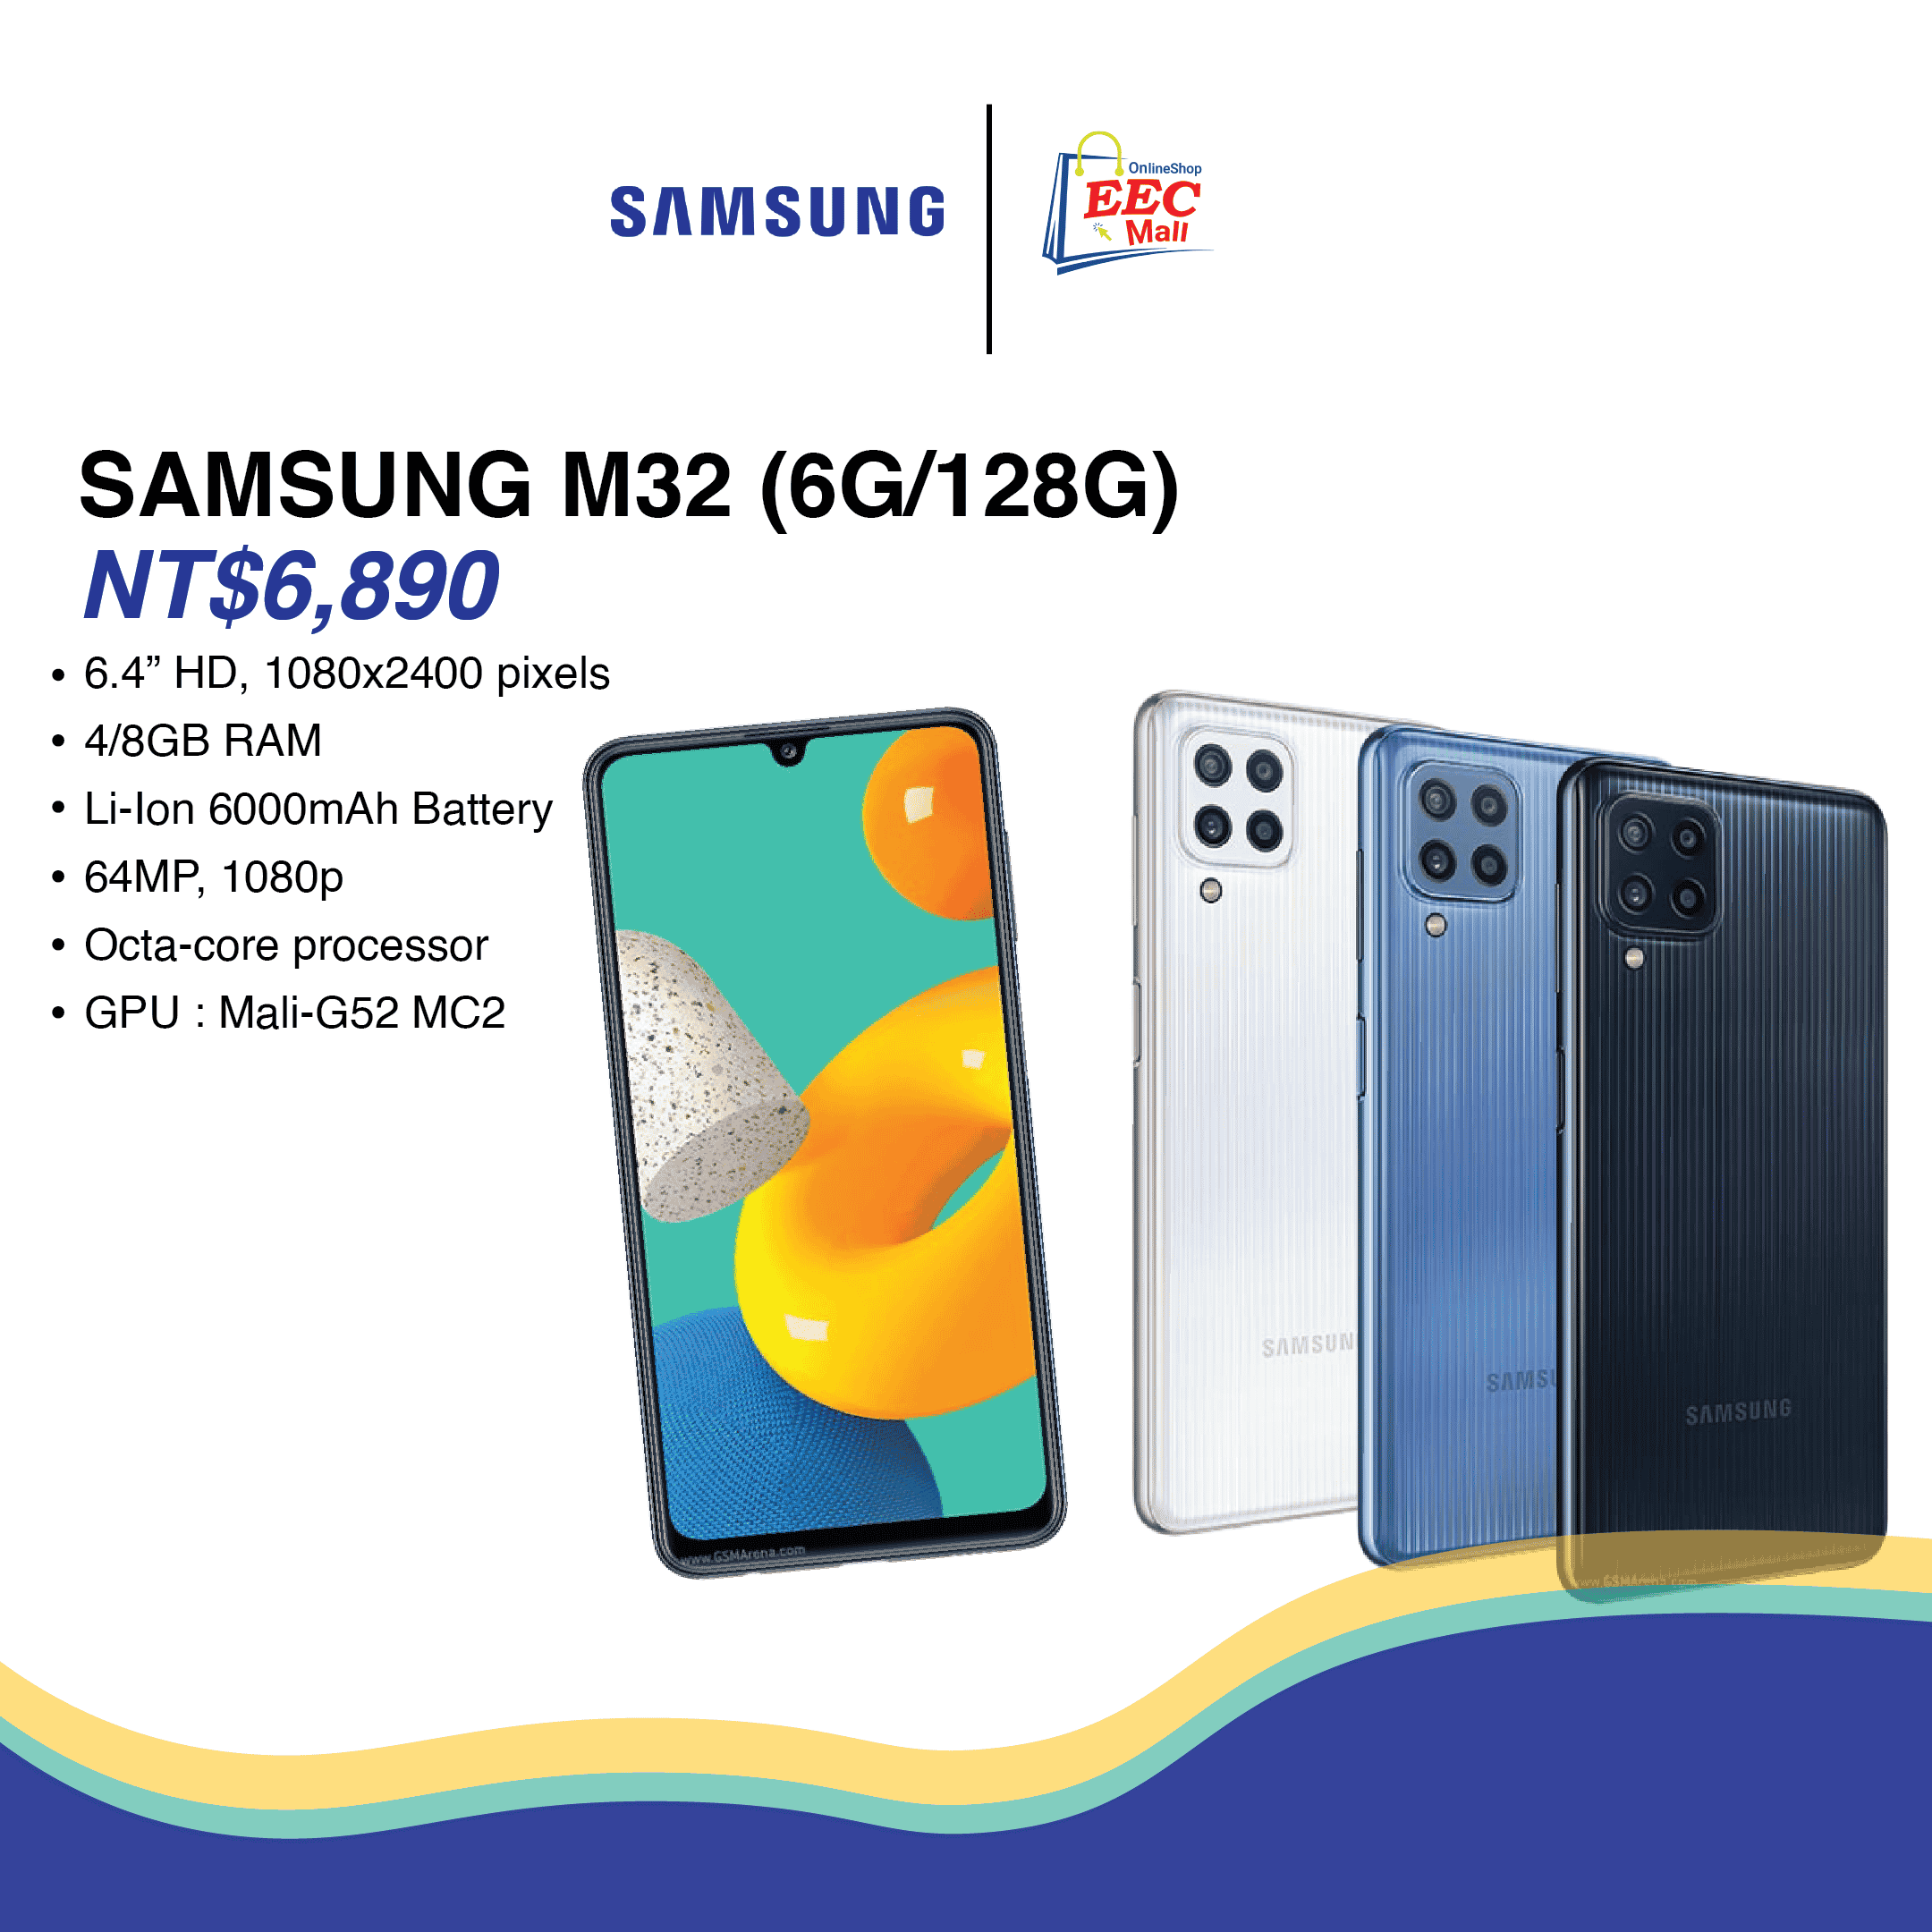 Samsung M32 (6G/128G)